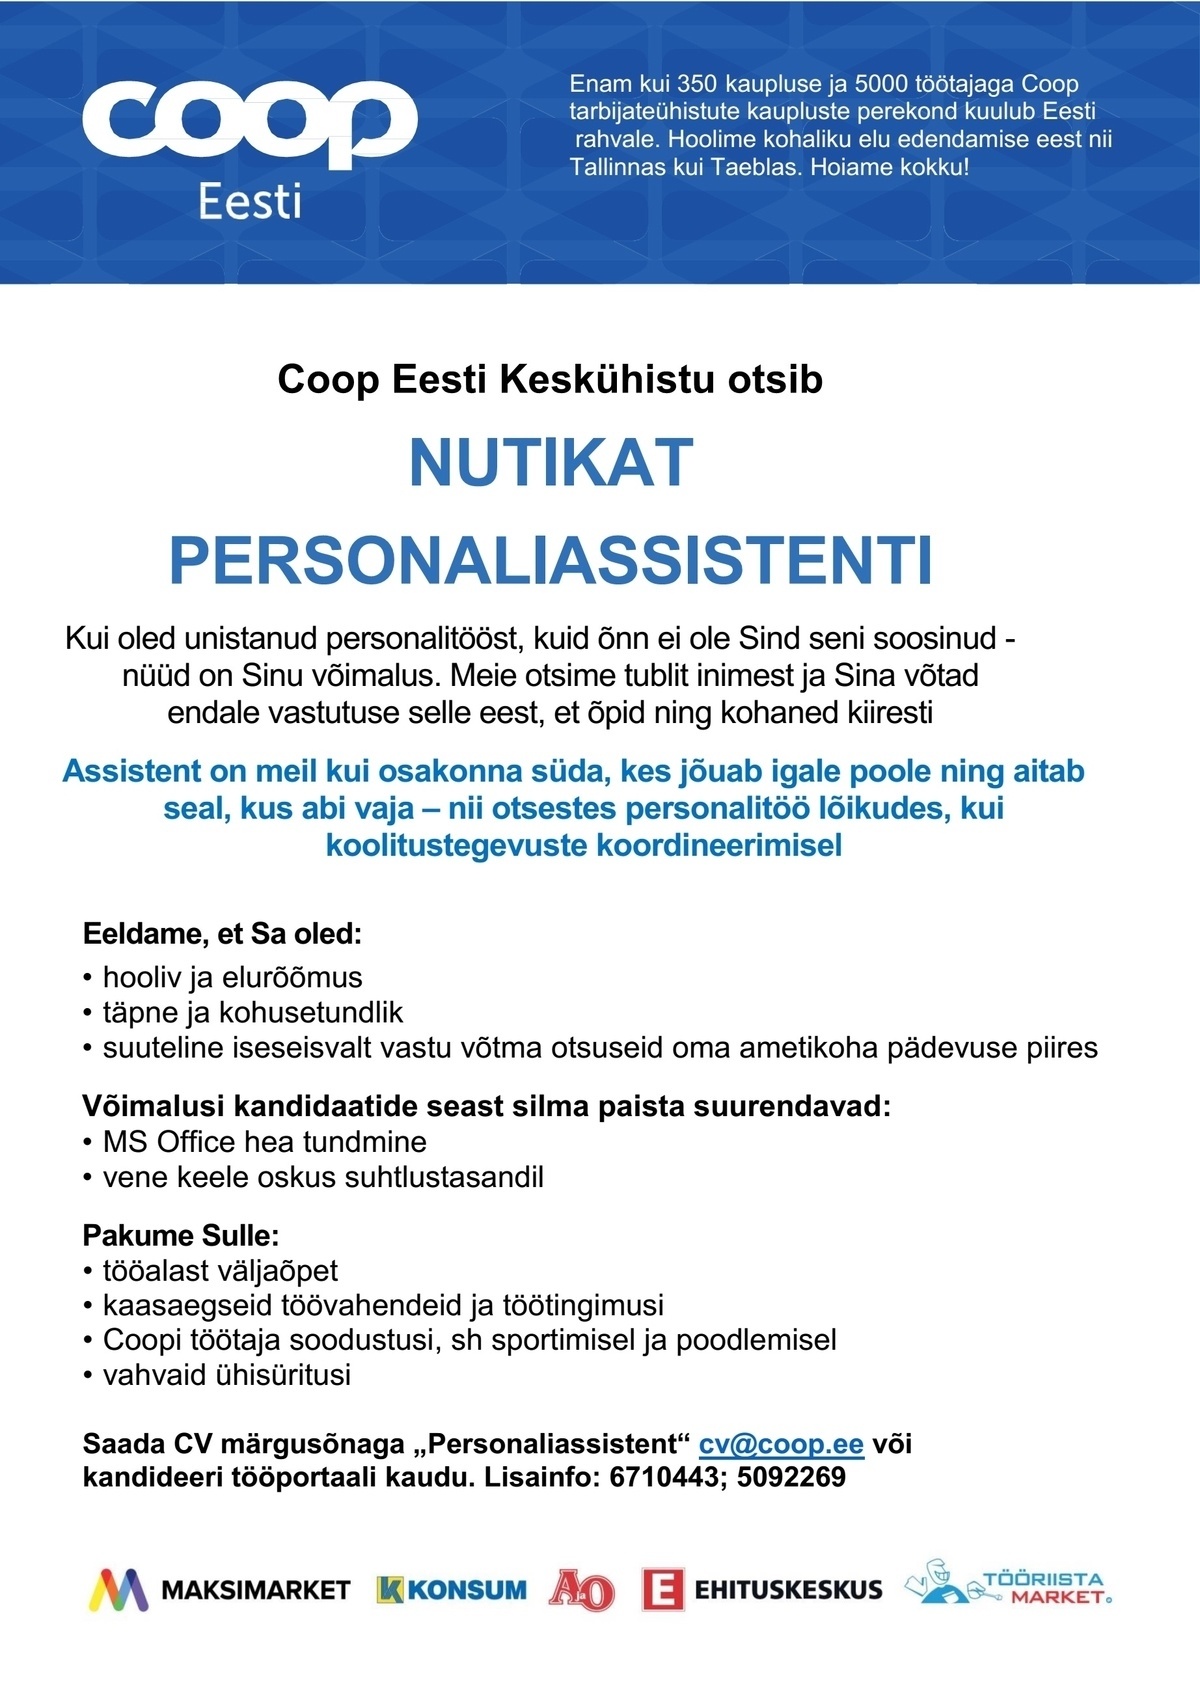 Coop Eesti Keskühistu Personaliassistent